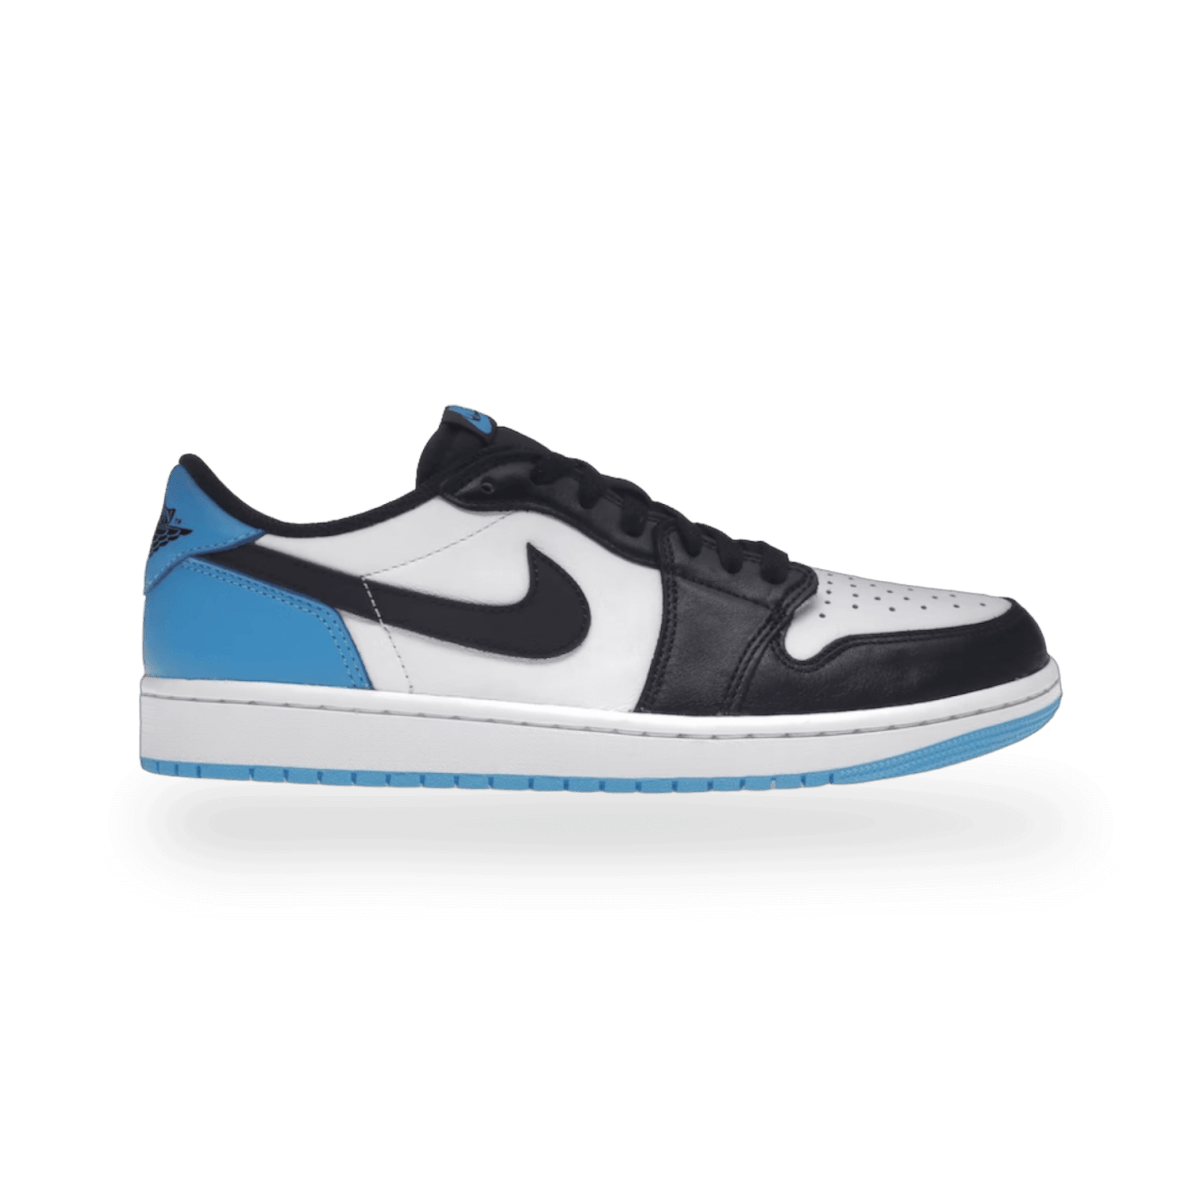 Jordan 1 Retro Low OG Black Dark Powder Blue - Low Sneaker - Jawns on Fire Sneakers & Streetwear